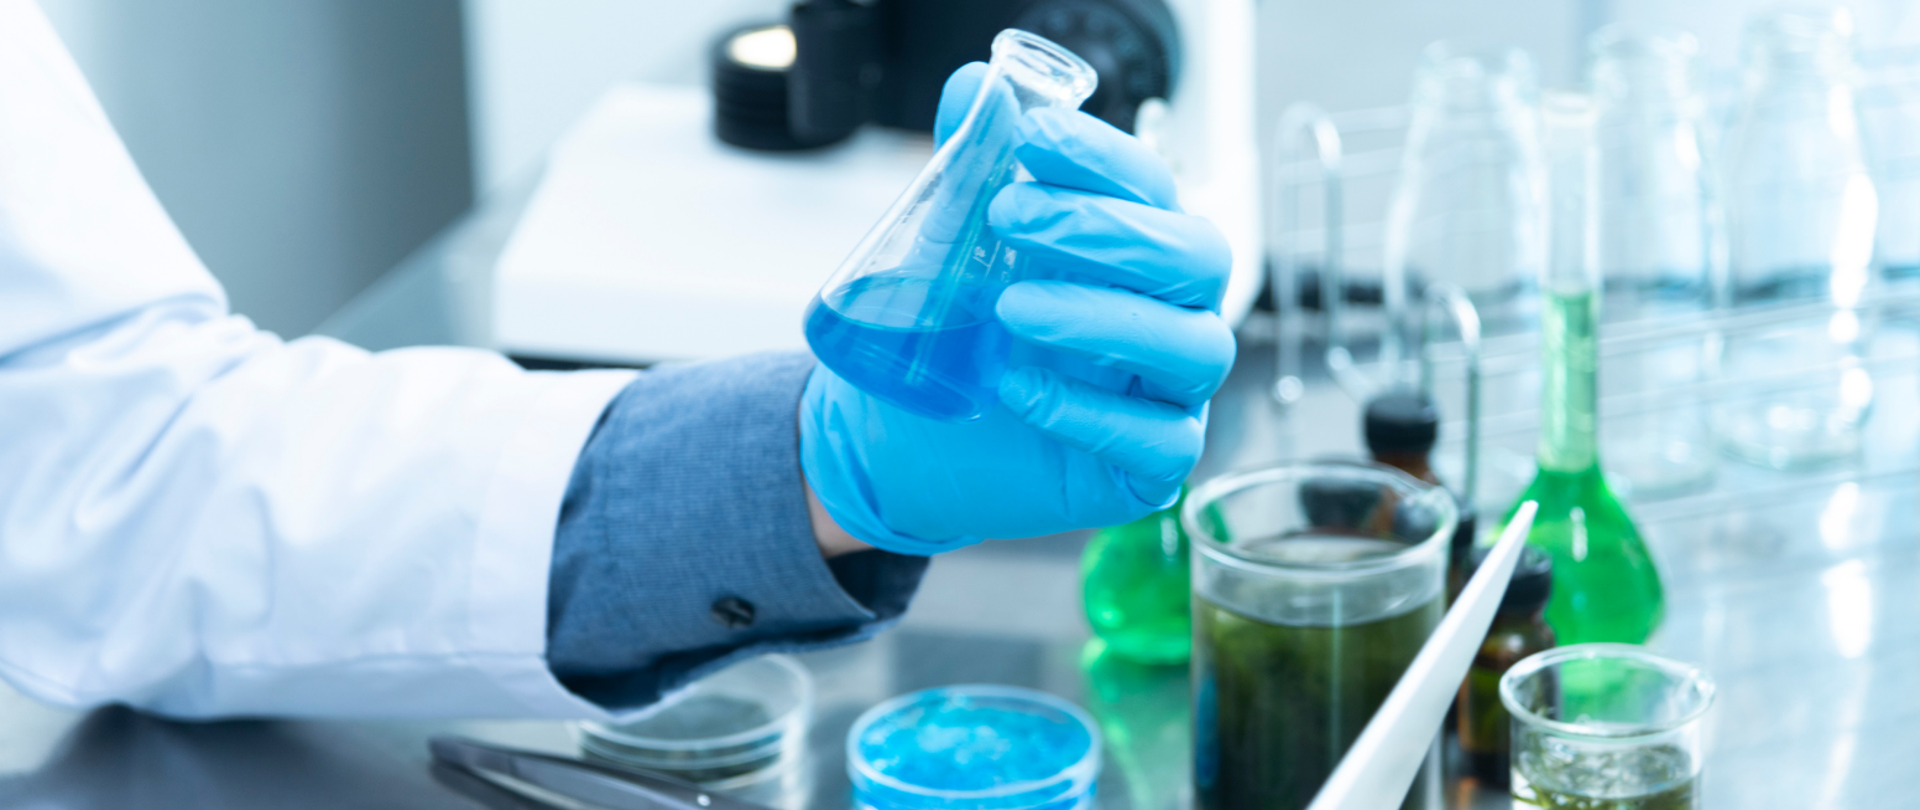 Laboratorium - ręka w białym kitlu i niebieskiej, gumowanej rękawiczce trzyma fiolkę wypełnioną niebieskim płynem. Obok próbki z zielonymi i niebieskimi płynami, a także puste fiolki. W tle mikroskop.